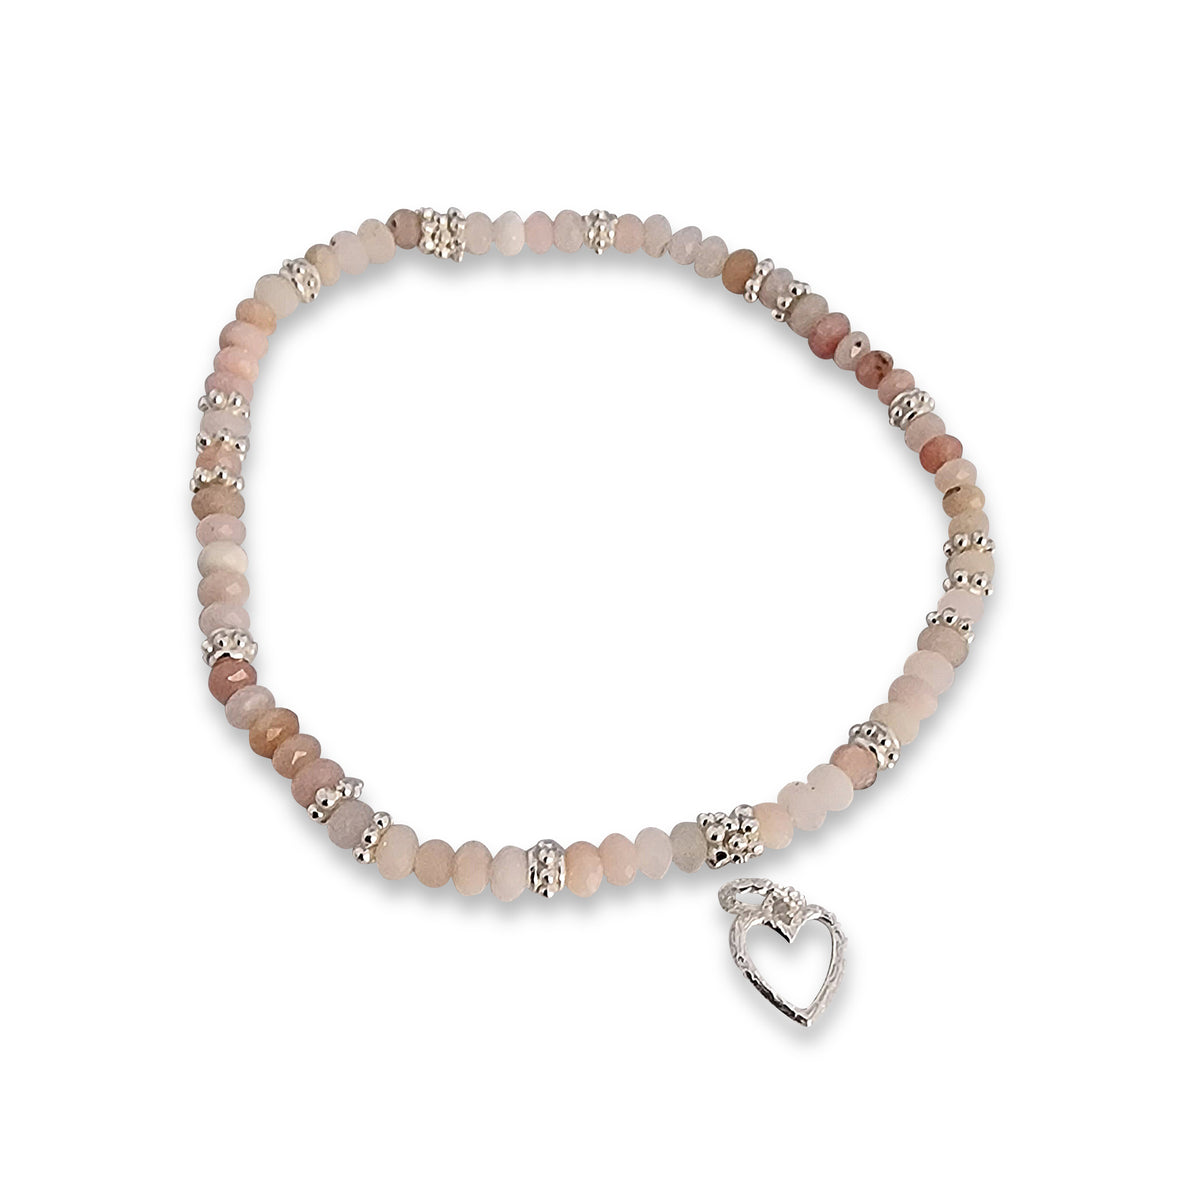 Andean opal bracelet